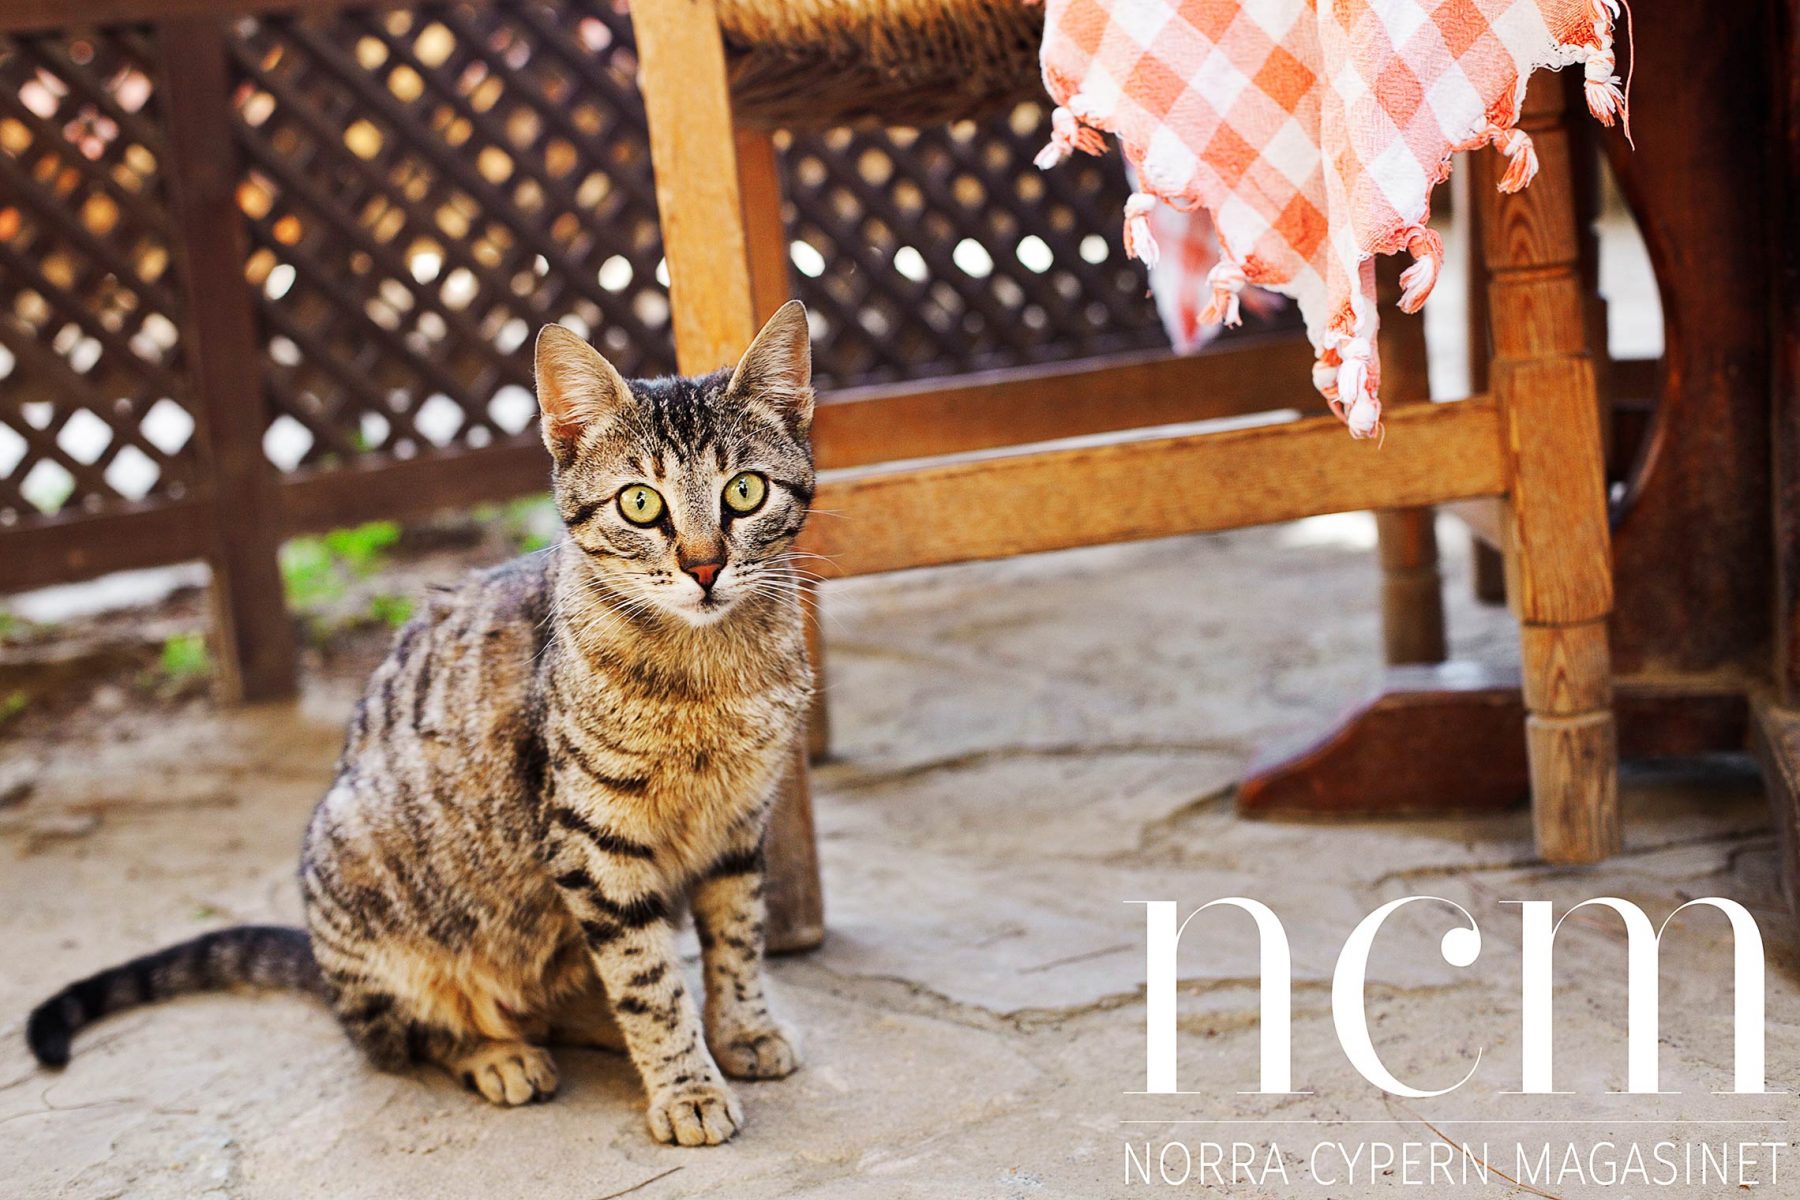 På Argonya Bageri Norra Cypern finns även glada katter